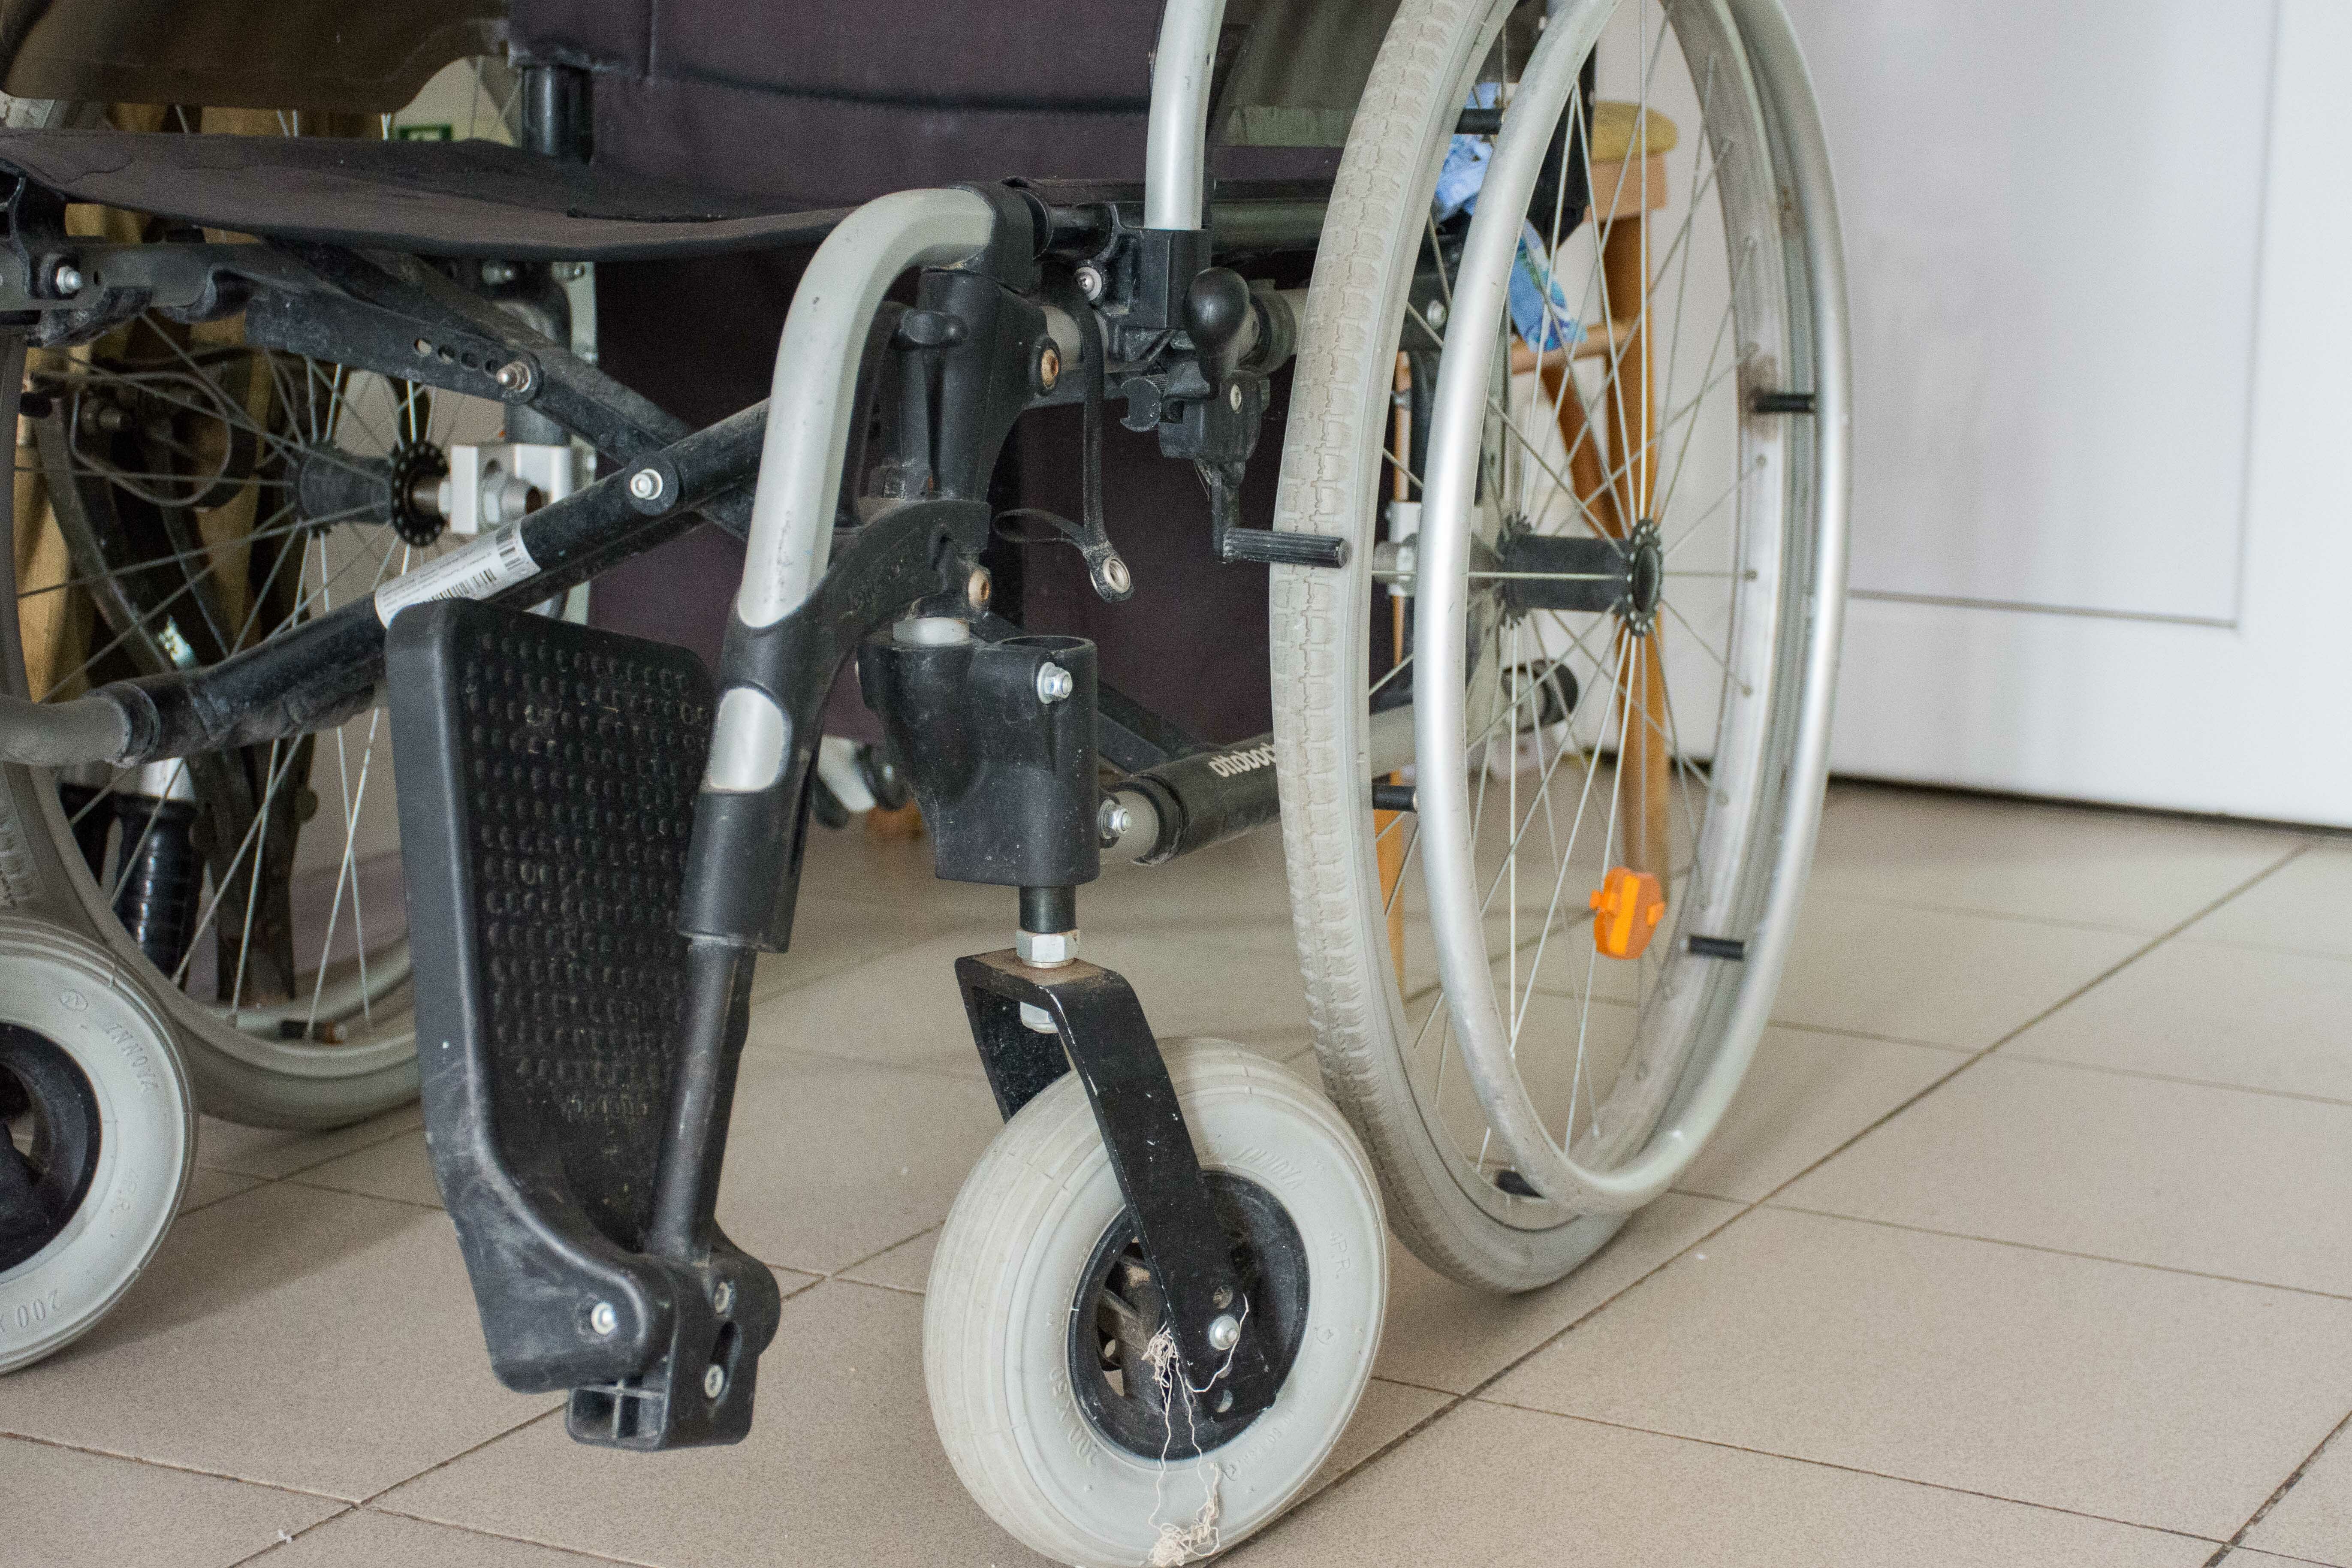 1600 инвалидов в Удмуртии не могут беспрепятственно выйти из квартир